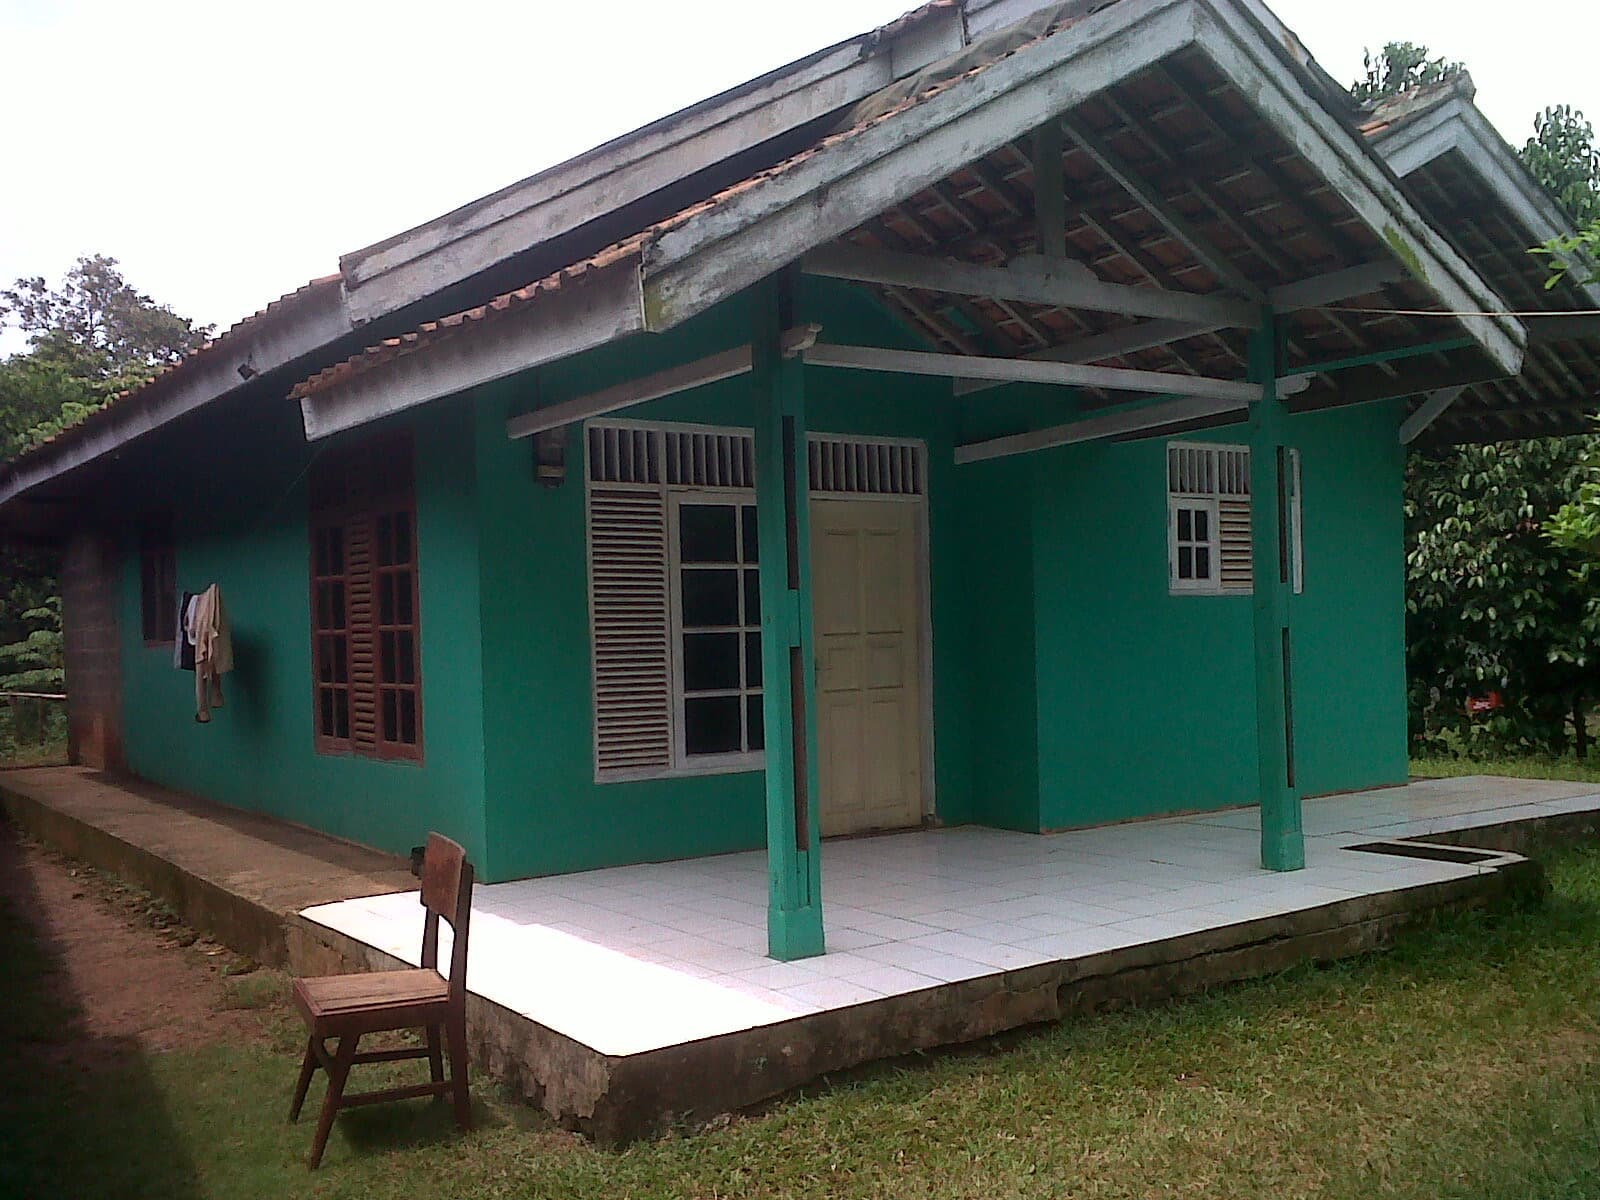  rumah desa  simple dan nyaman Thegorbalsla